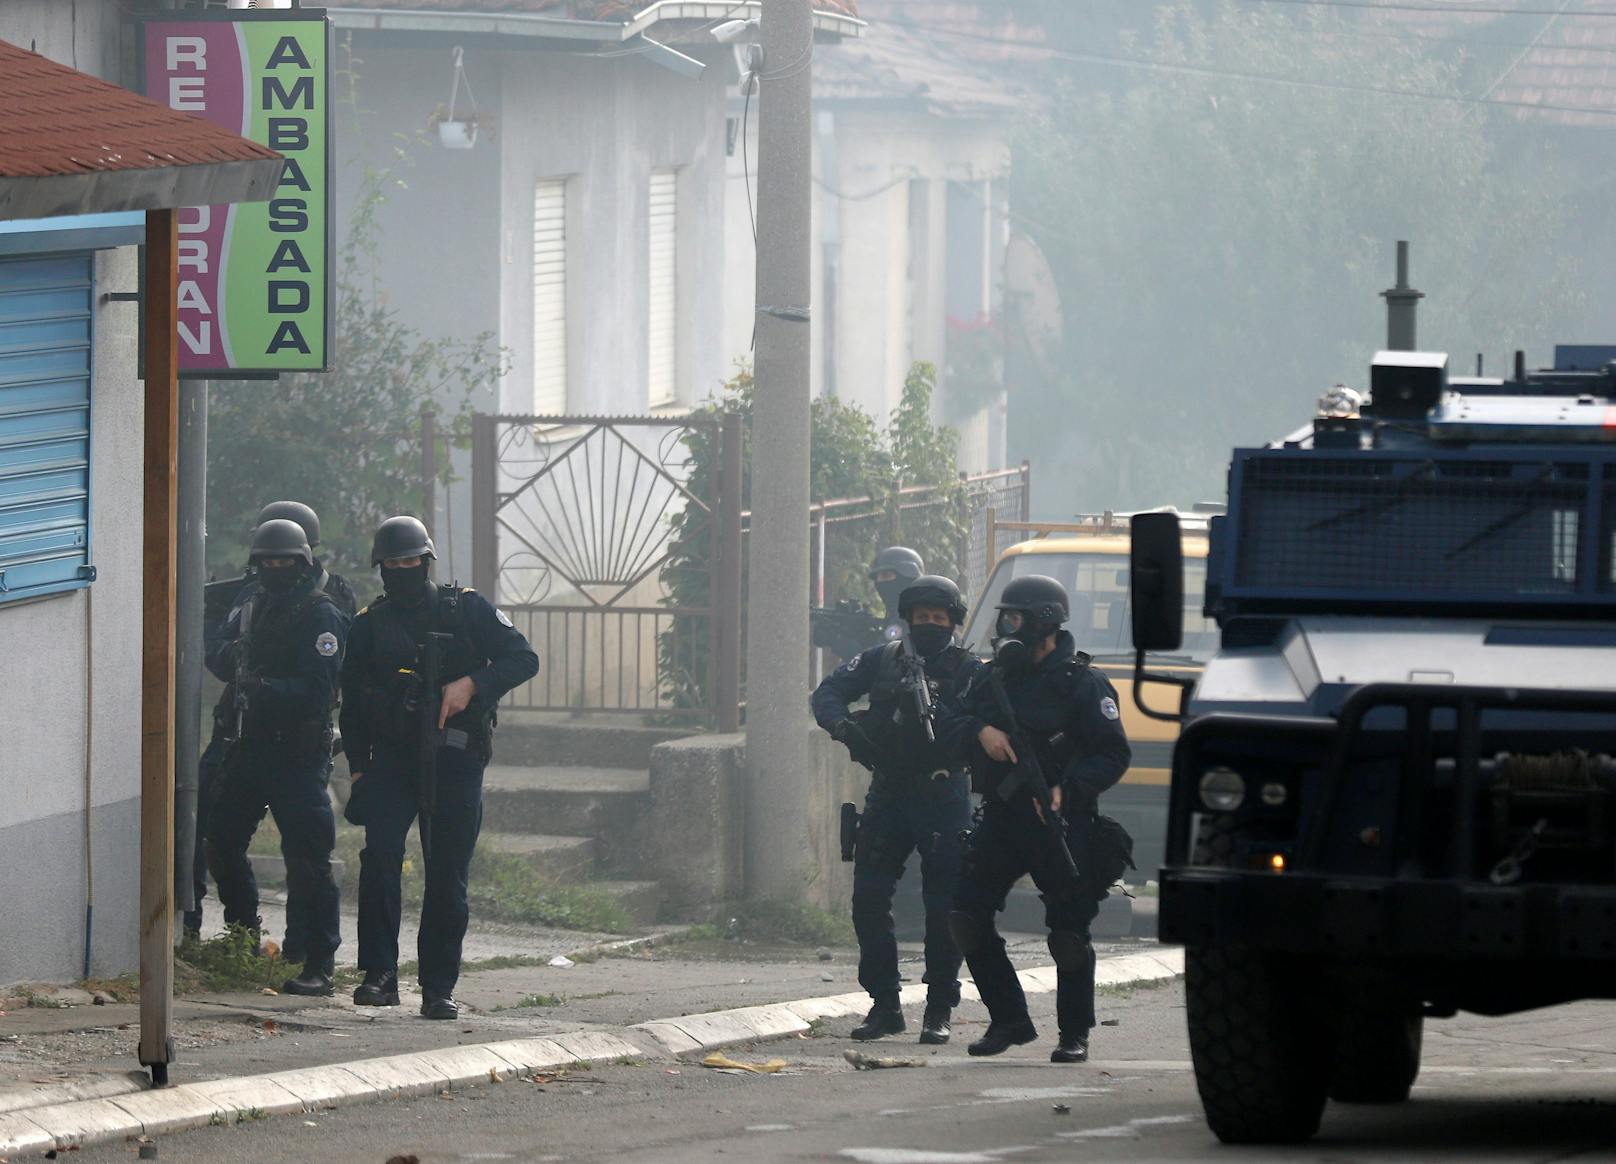 Mittwochmorgen kam es unter anderem im mehrheitlich von Serben bewohnten Norden der Stadt Mitrovica (Kosovo) zu einem Übergriff der kosovarischen Polizei.